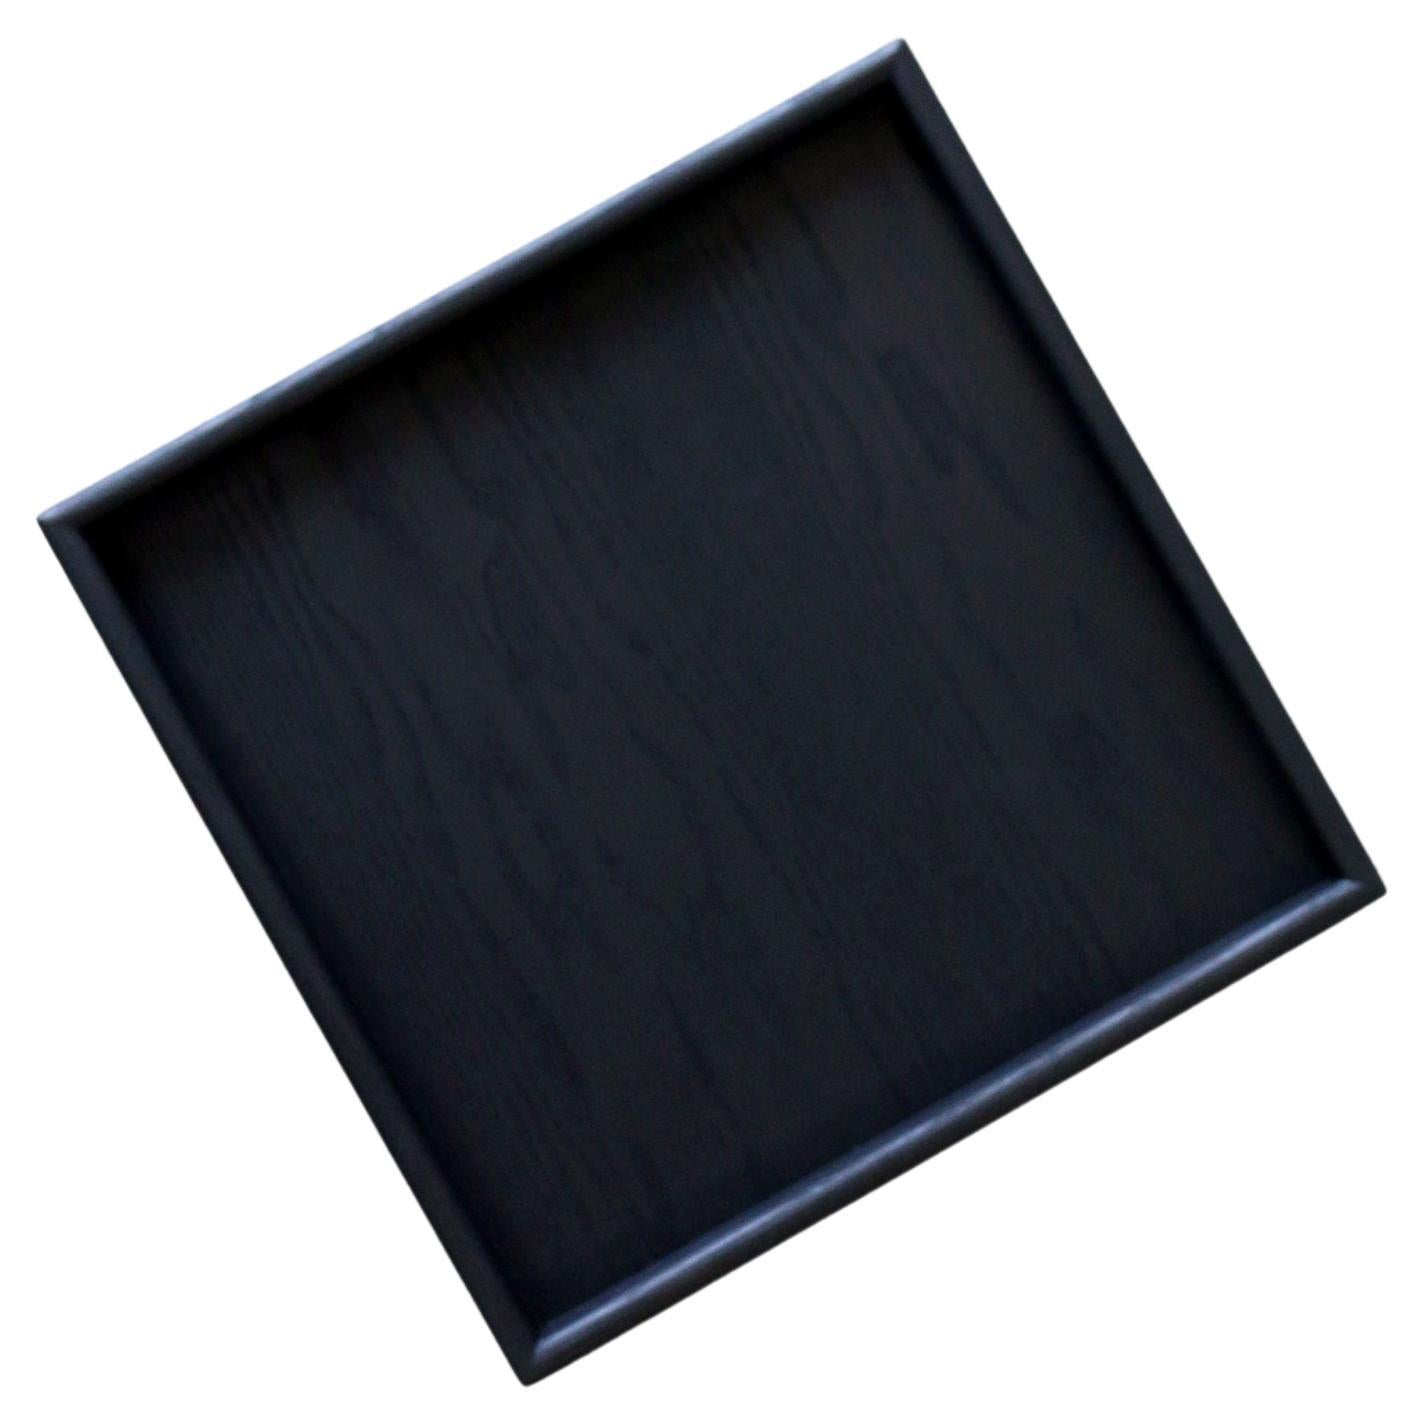 Plateau de service carré en bois noir fait à la main